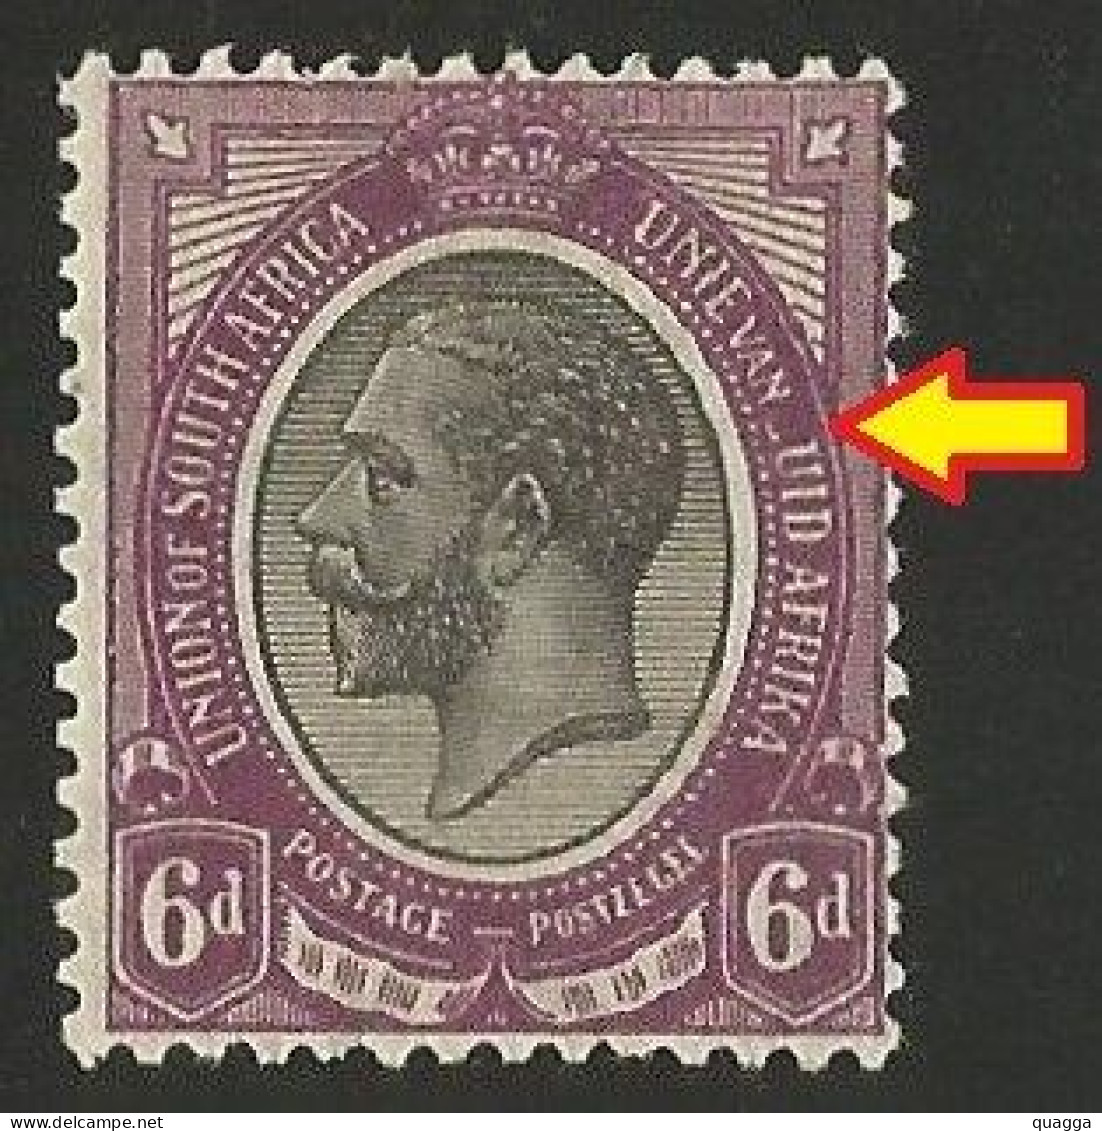 South Africa 1913. 6d Partial Missing 'Z' In 'ZUID'. (UHB 9 V1), SACC 10var*, SG 11var*. - Neufs